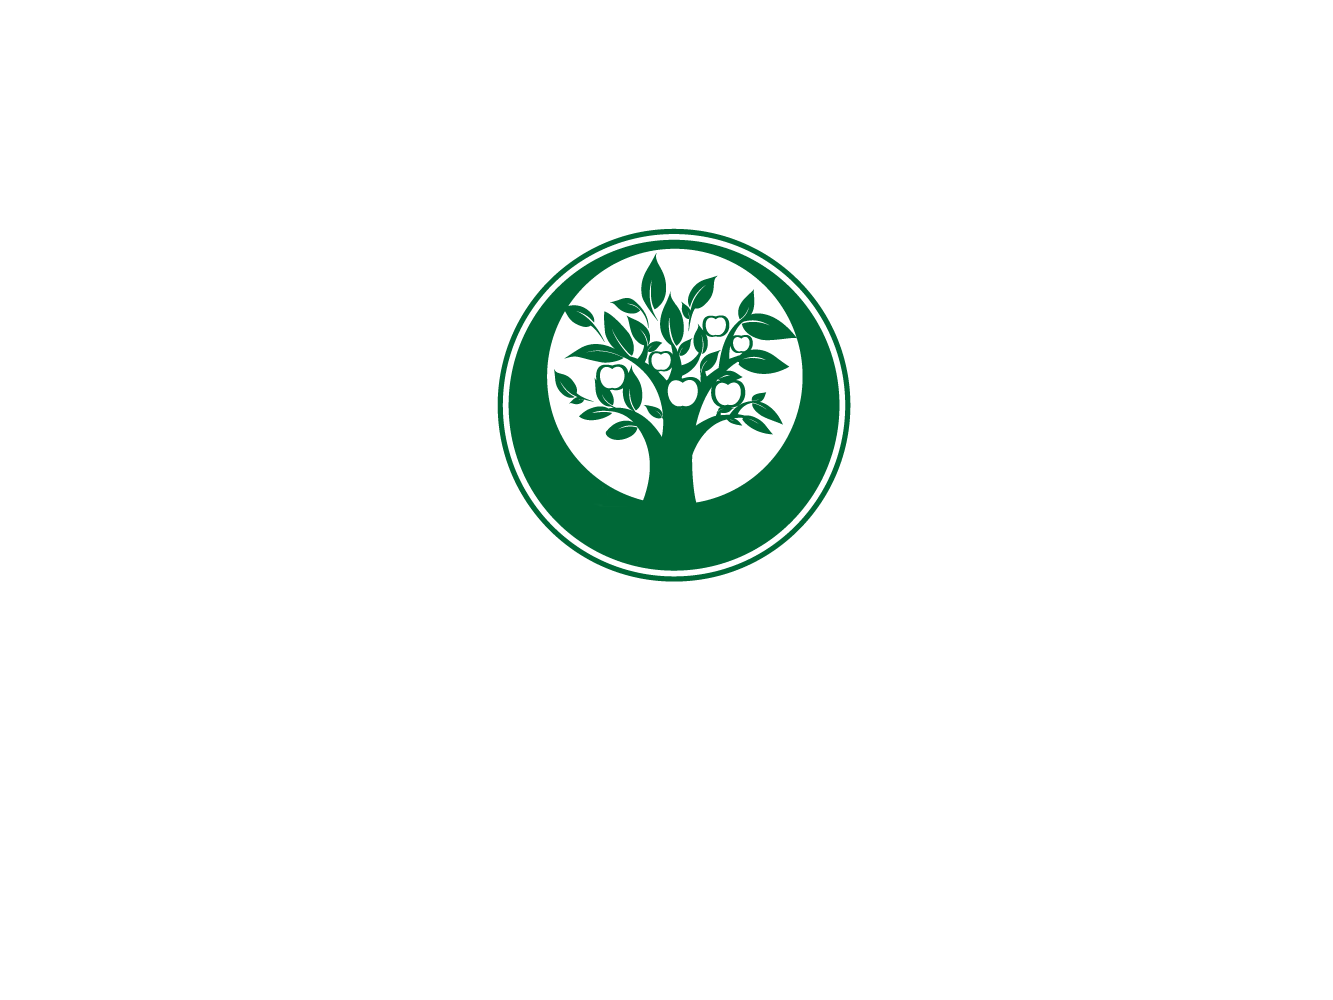 泰安韻可園林綠化有限公司